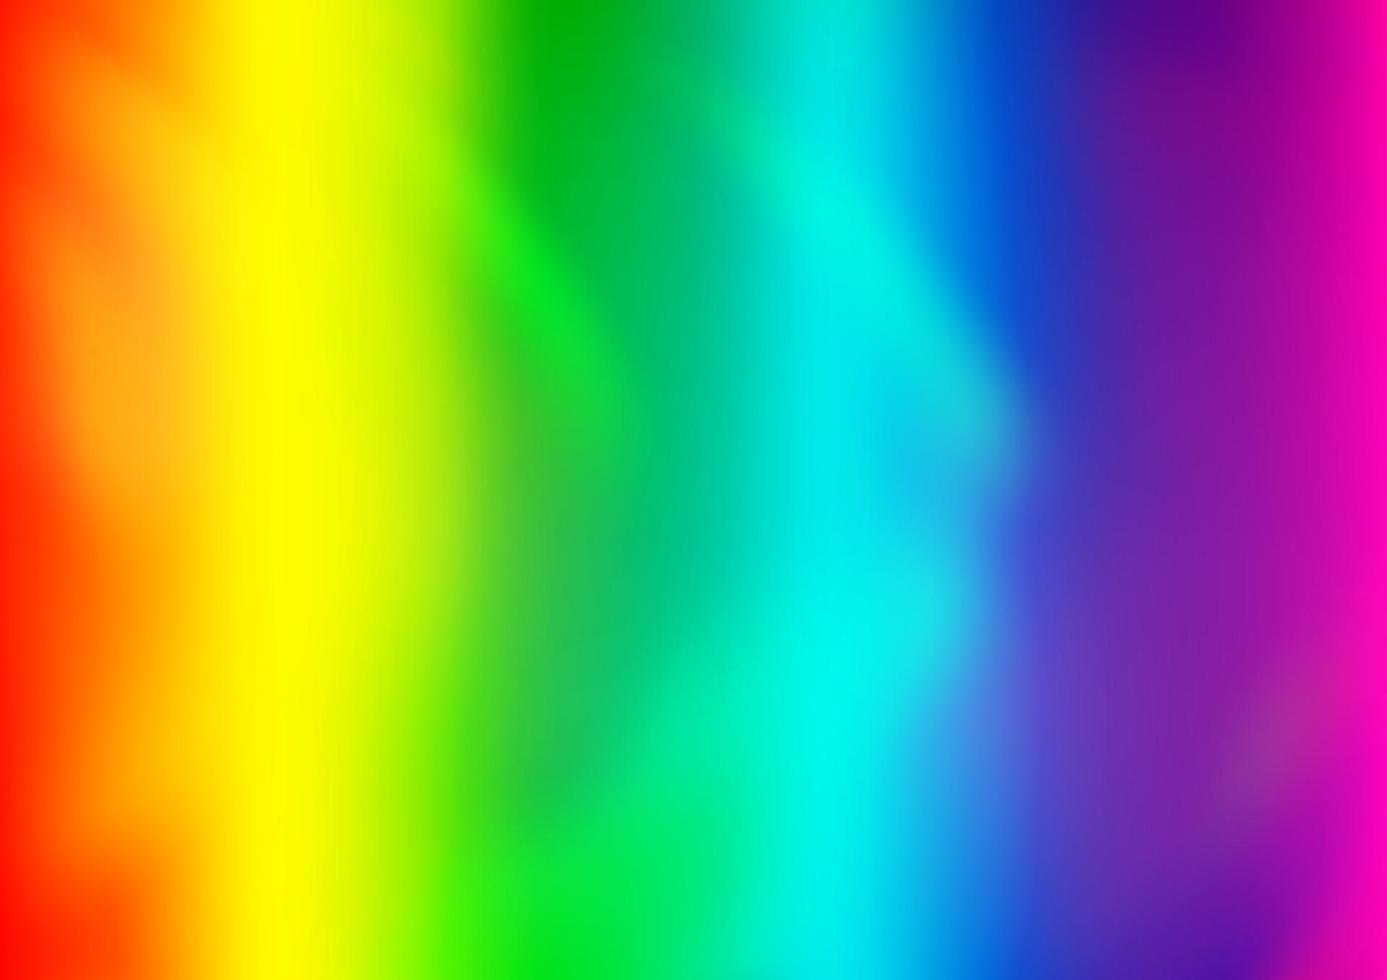 luz multicolor, modelo borrado e colorido do vetor do arco-íris.